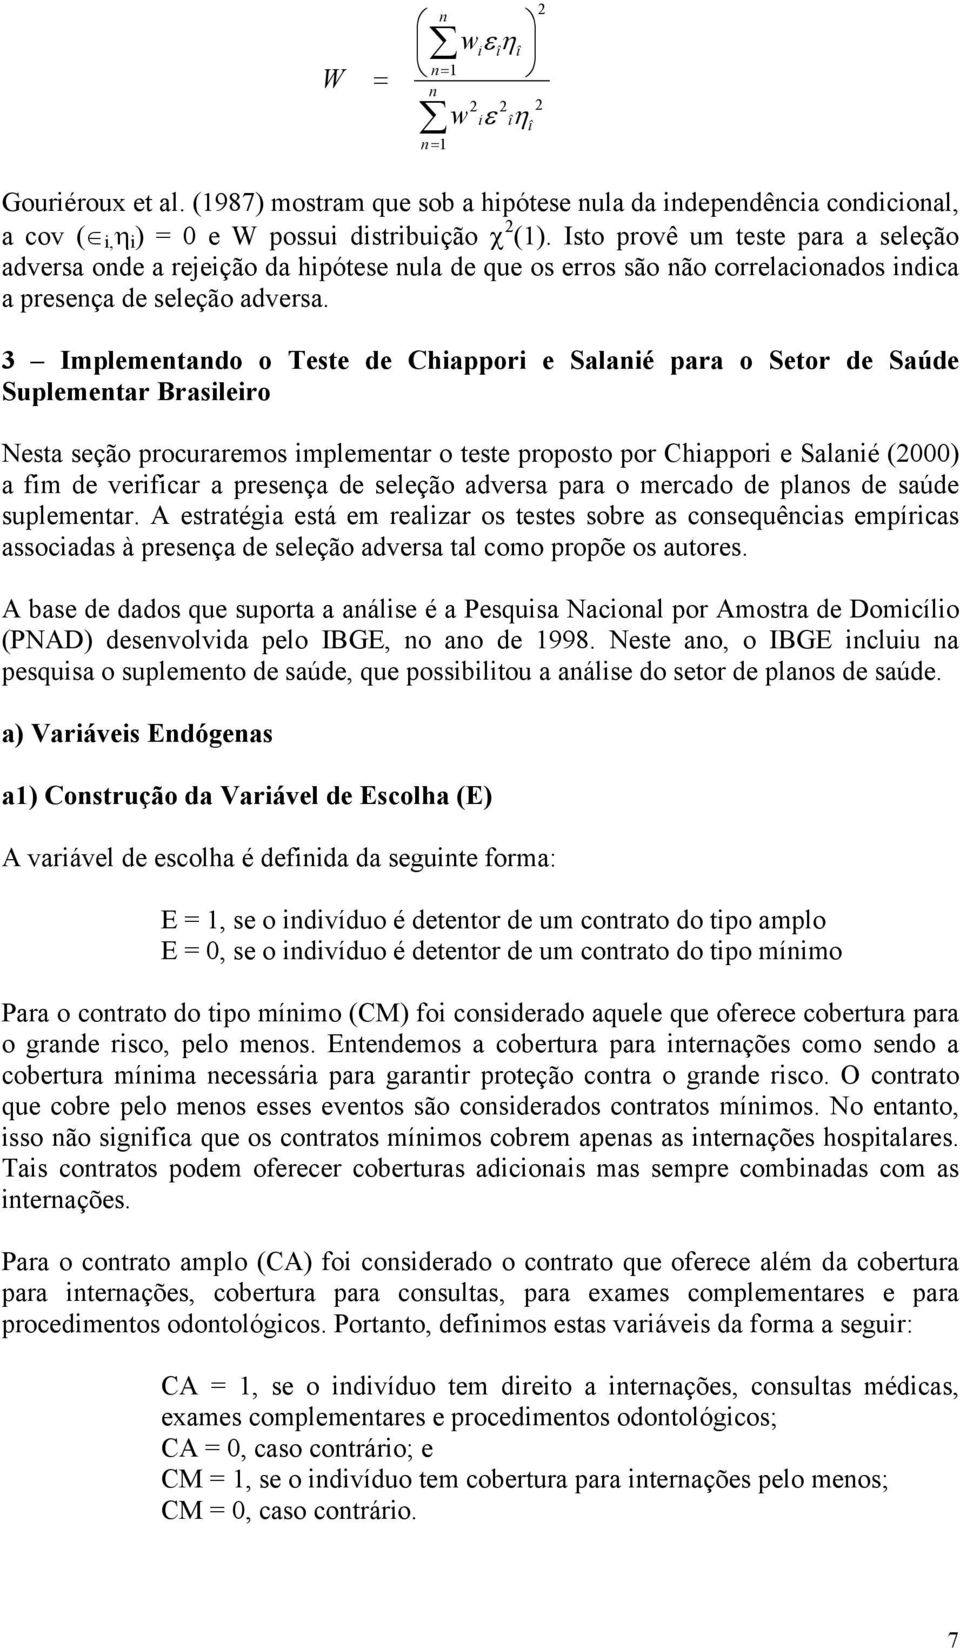 3 Implemetado o Teste de Chiappori e Salaié para o Setor de Saúde Suplemetar Brasileiro Nesta seção procuraremos implemetar o teste proposto por Chiappori e Salaié (2000) a fim de verificar a preseça